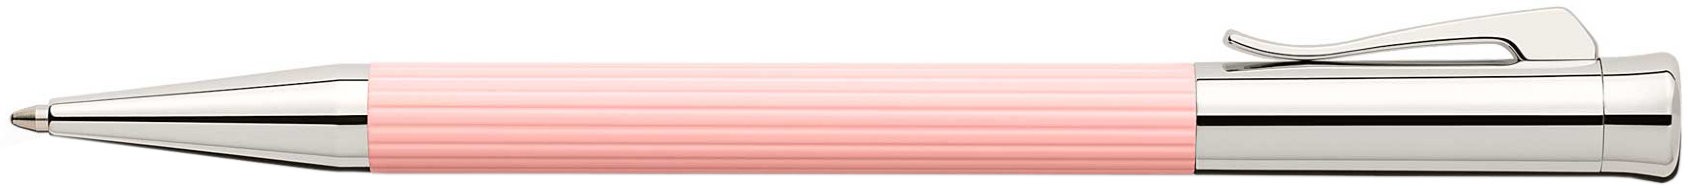 Шариковая ручка Graf von Faber-Castell Tamitio Rose